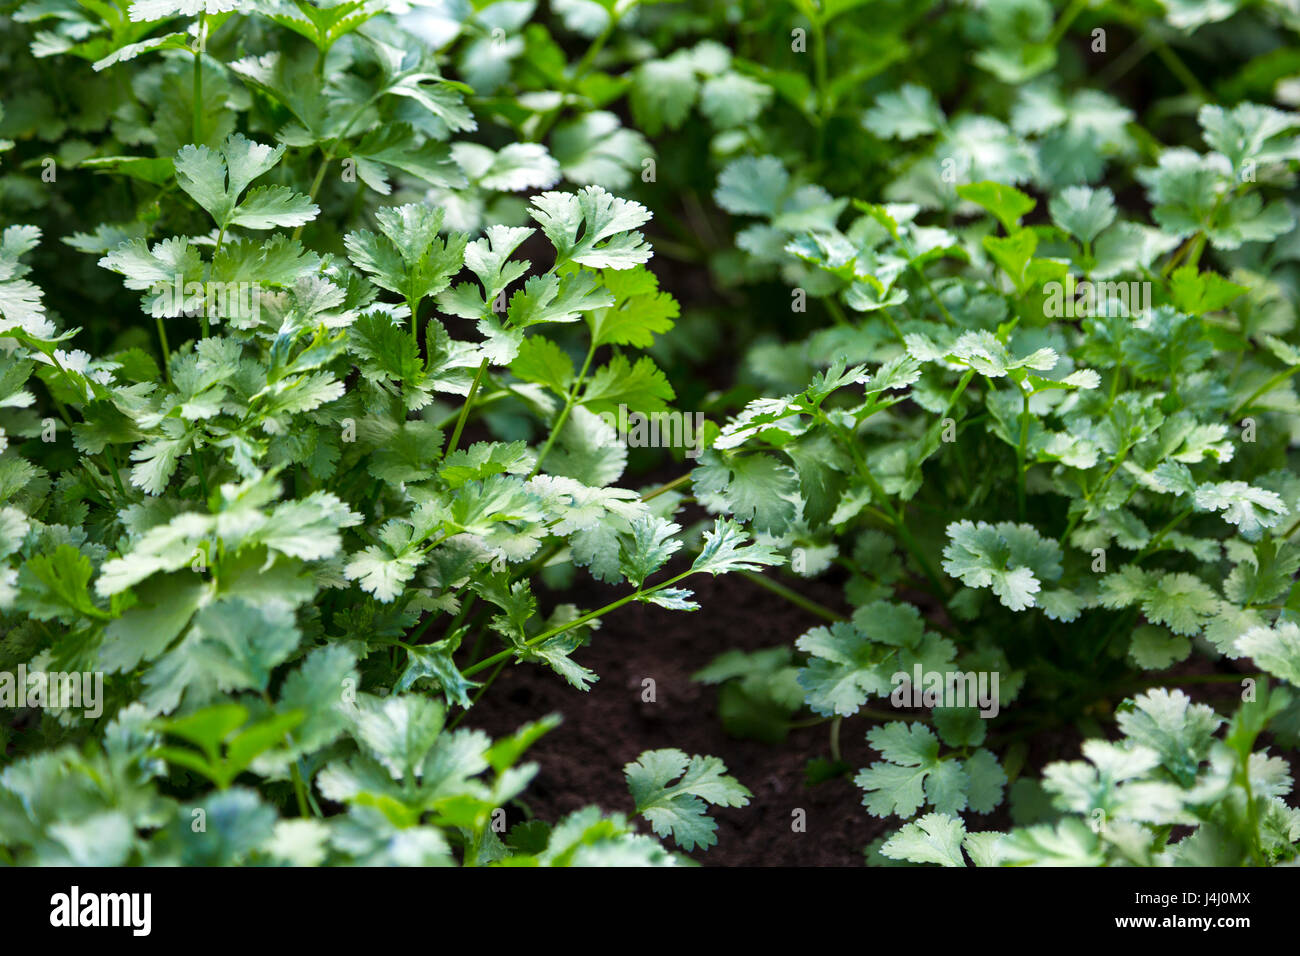 La coriandre fraîche (Coriandrum sativum) les plantes qui poussent dans un jardin Banque D'Images